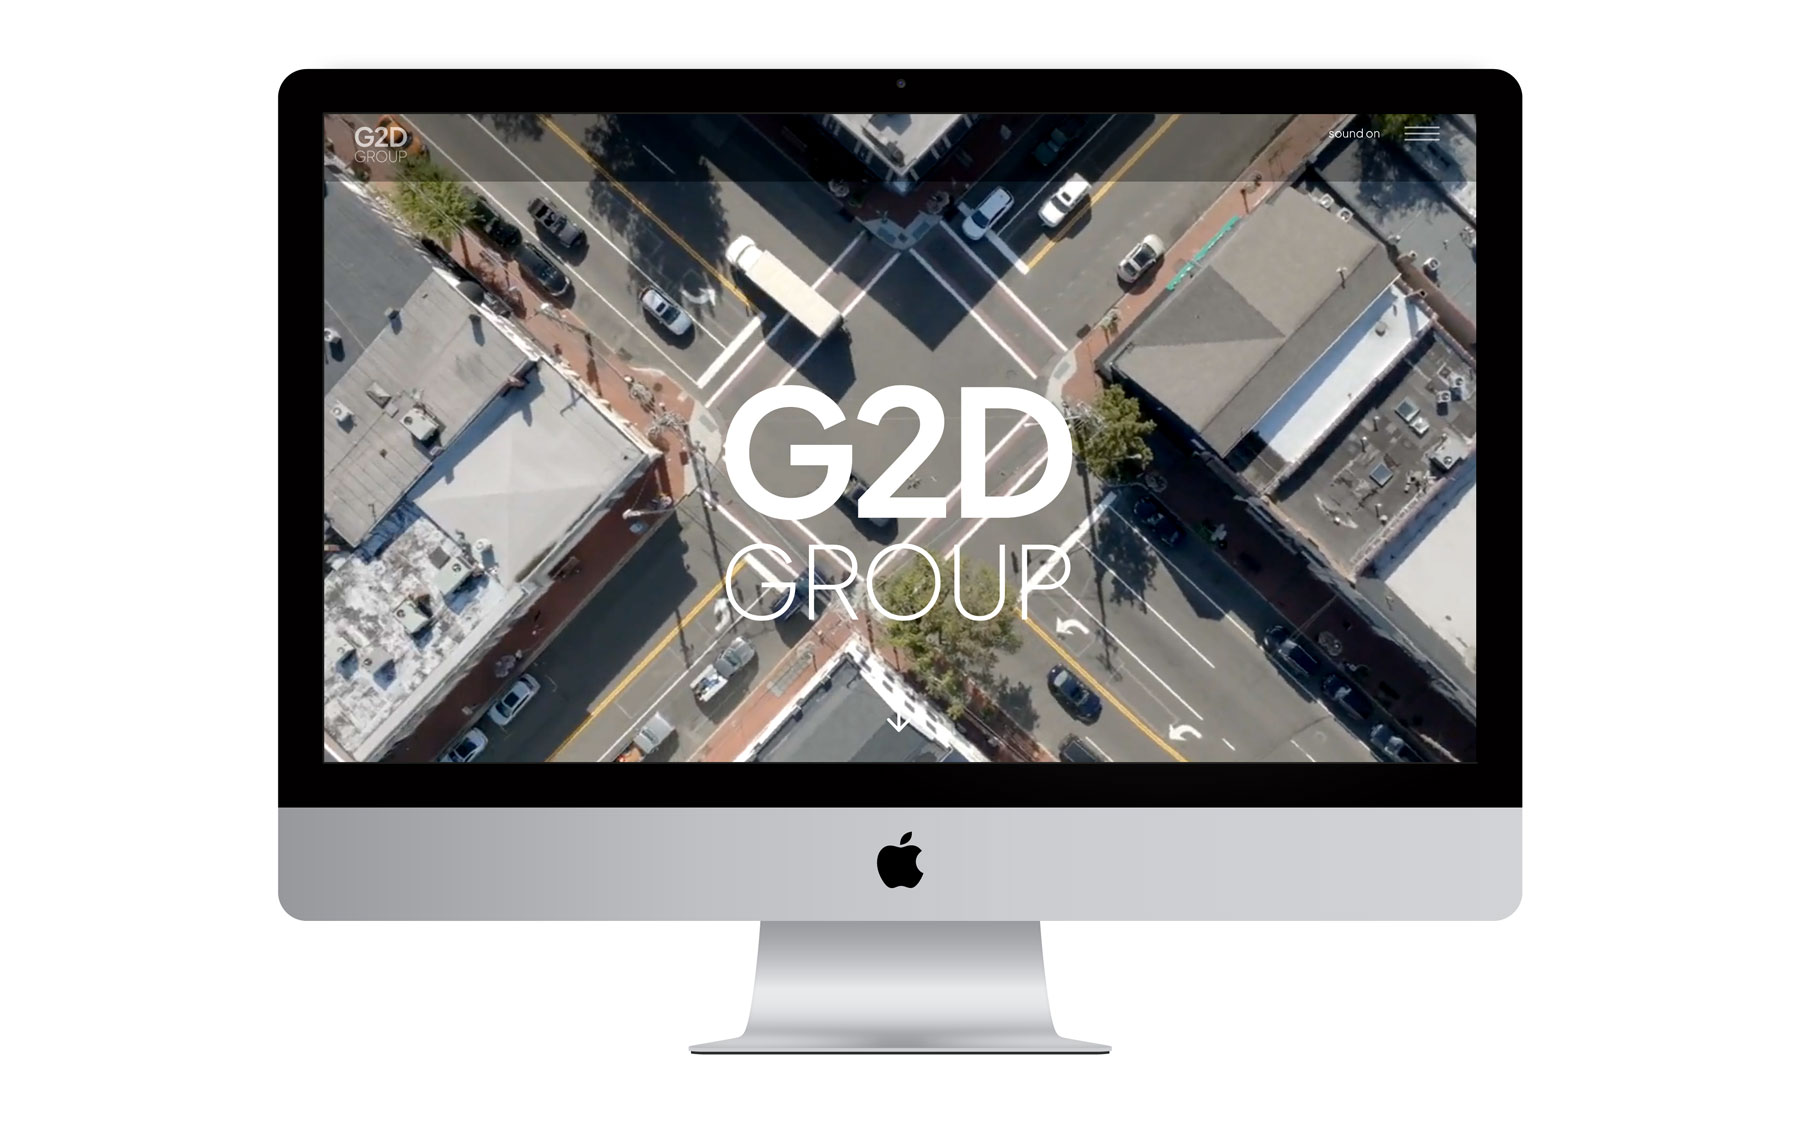 G2D Group